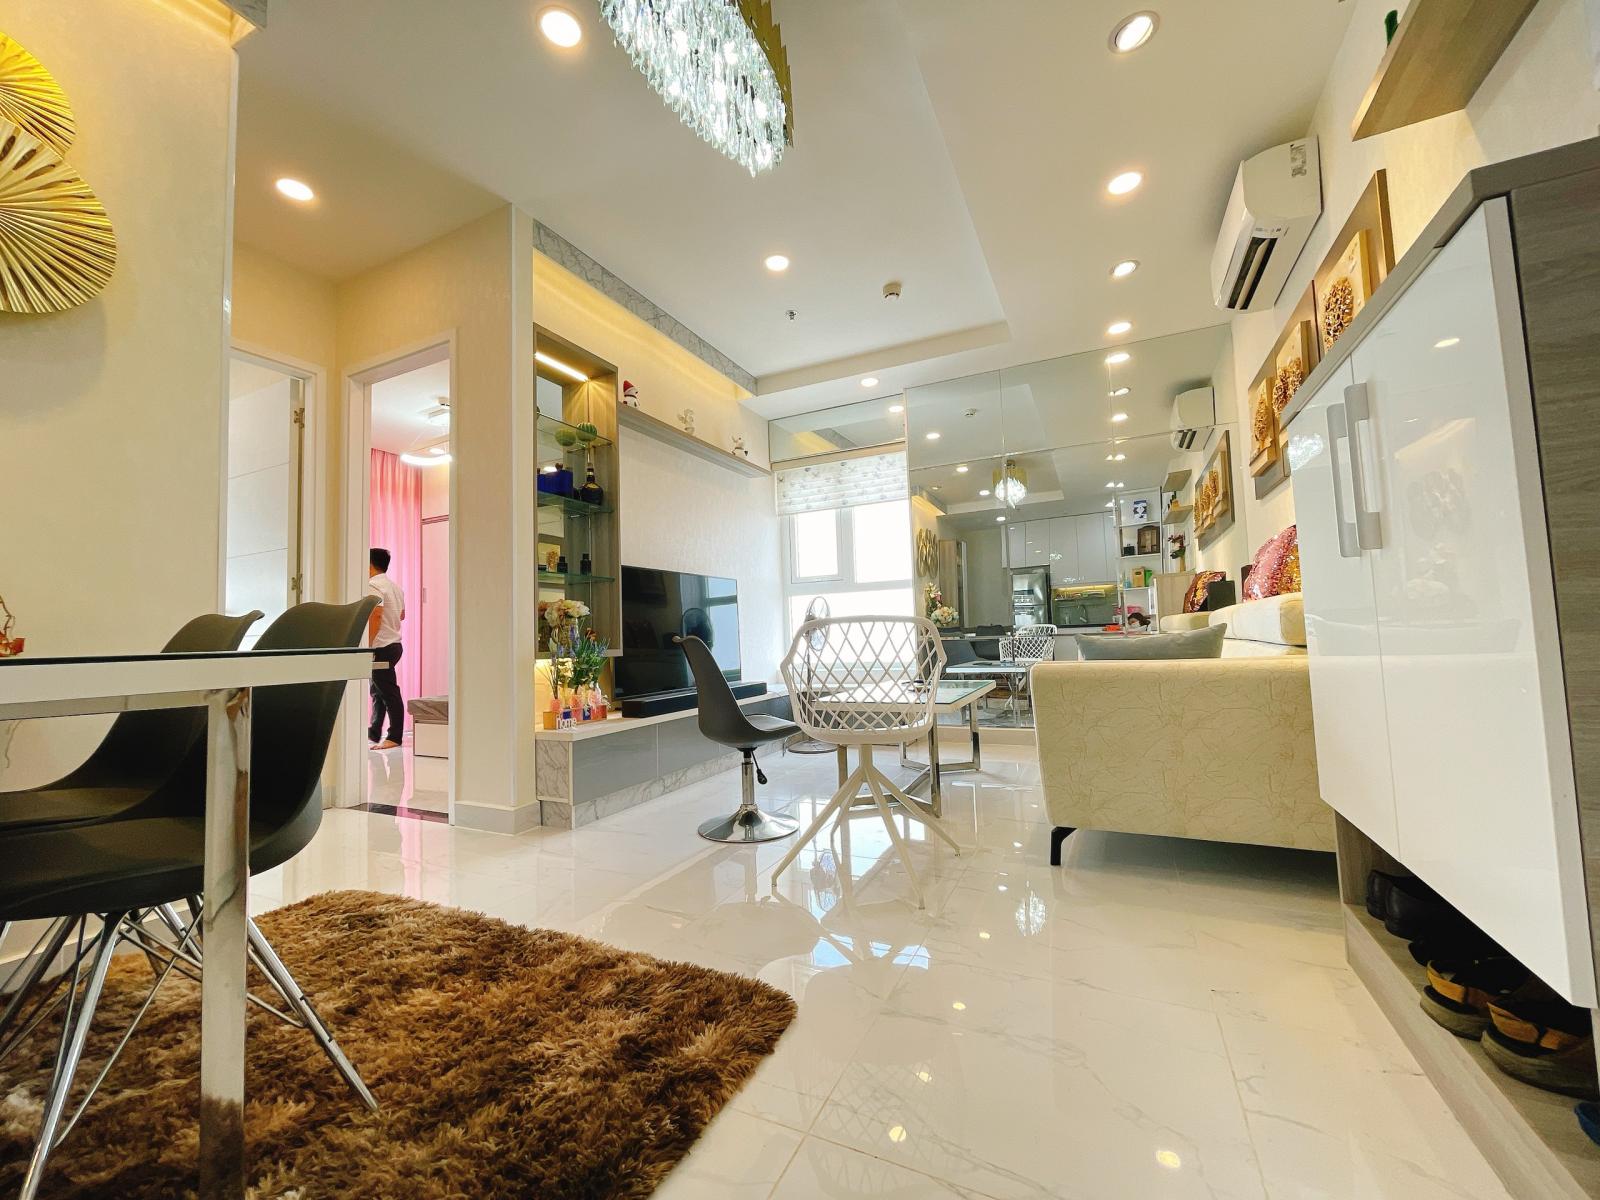 Cho thuê gấp căn hộ Tera Royal vip nhất nhì Q. 3, 72m2, 2pn, full NT, nhà đẹp như mơ. 